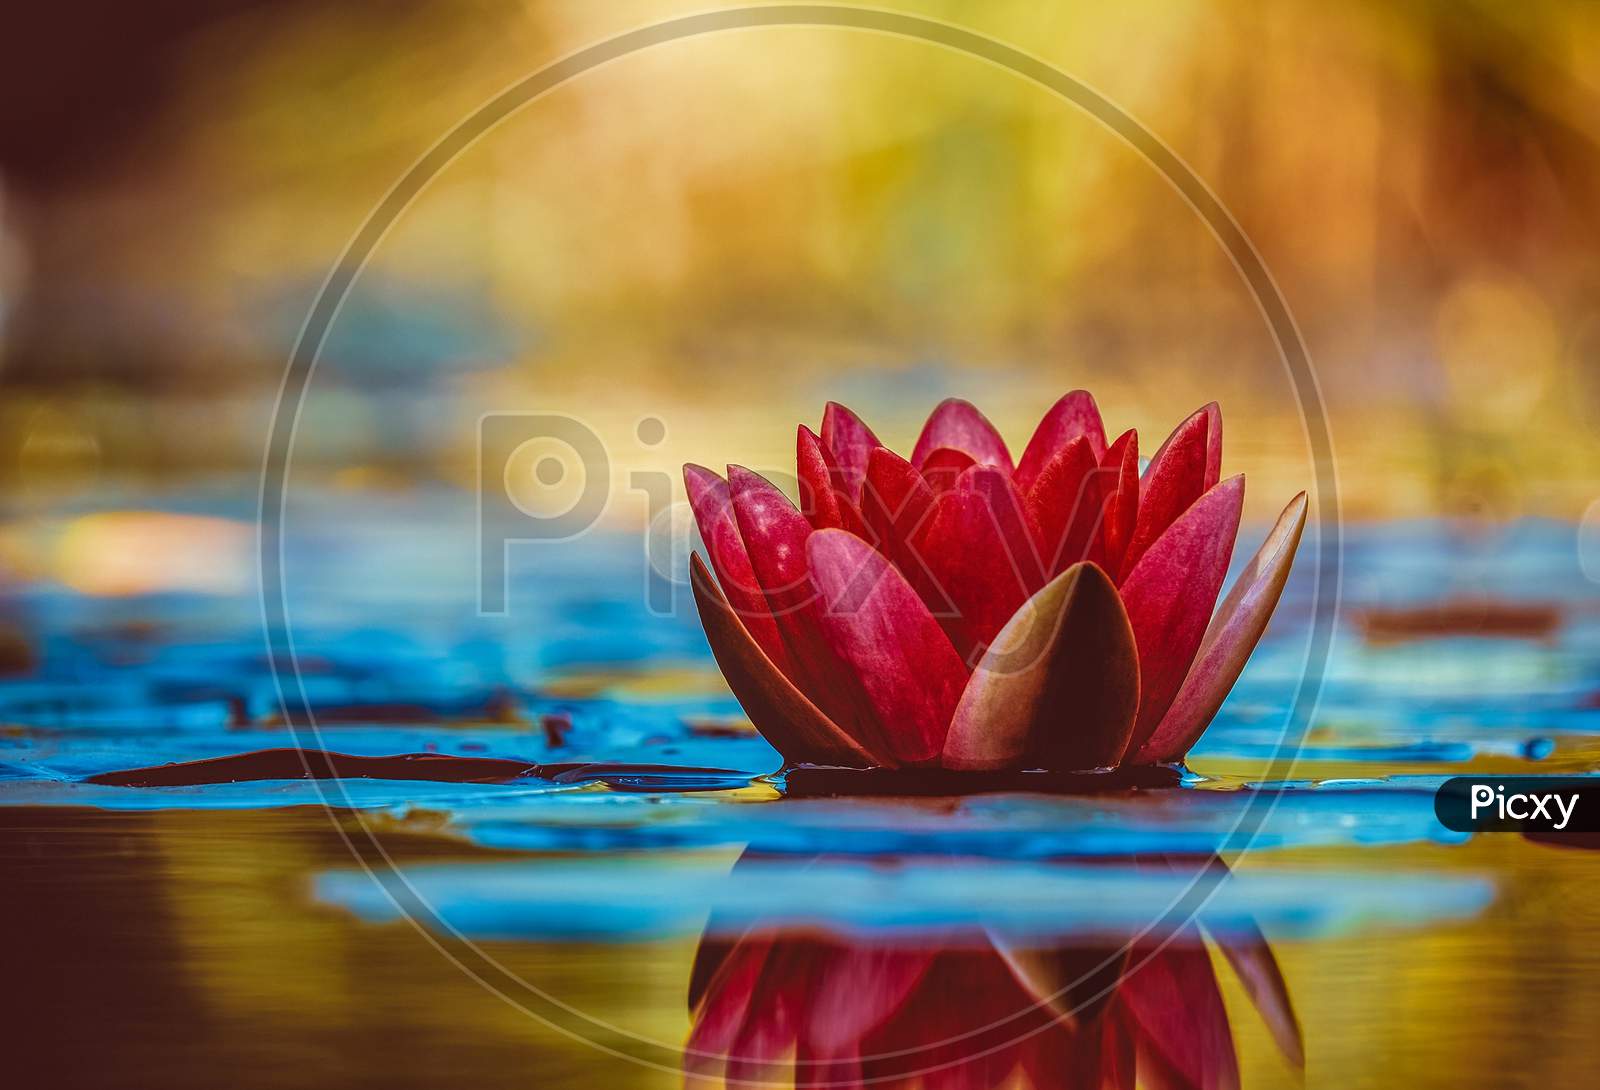 Red lotus flower